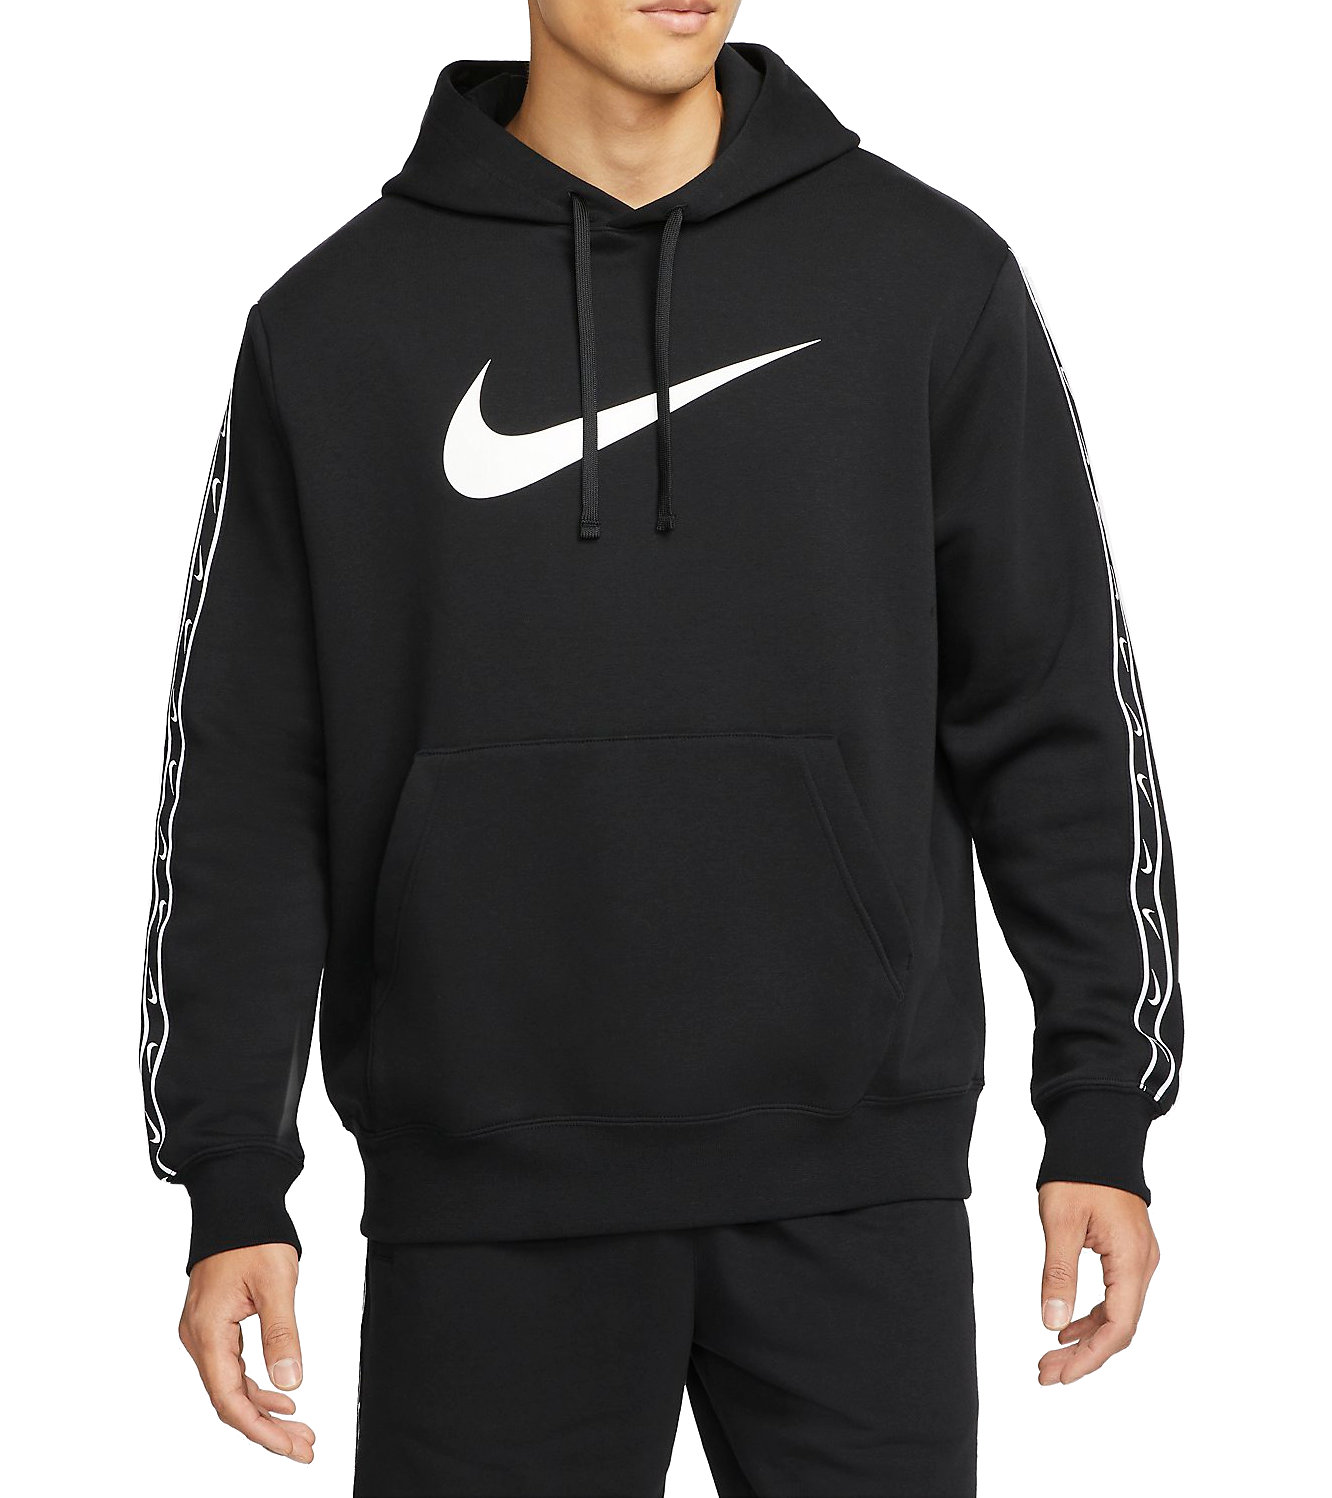 Hooded sweatshirt Nike Repeat Fleece Hoodie